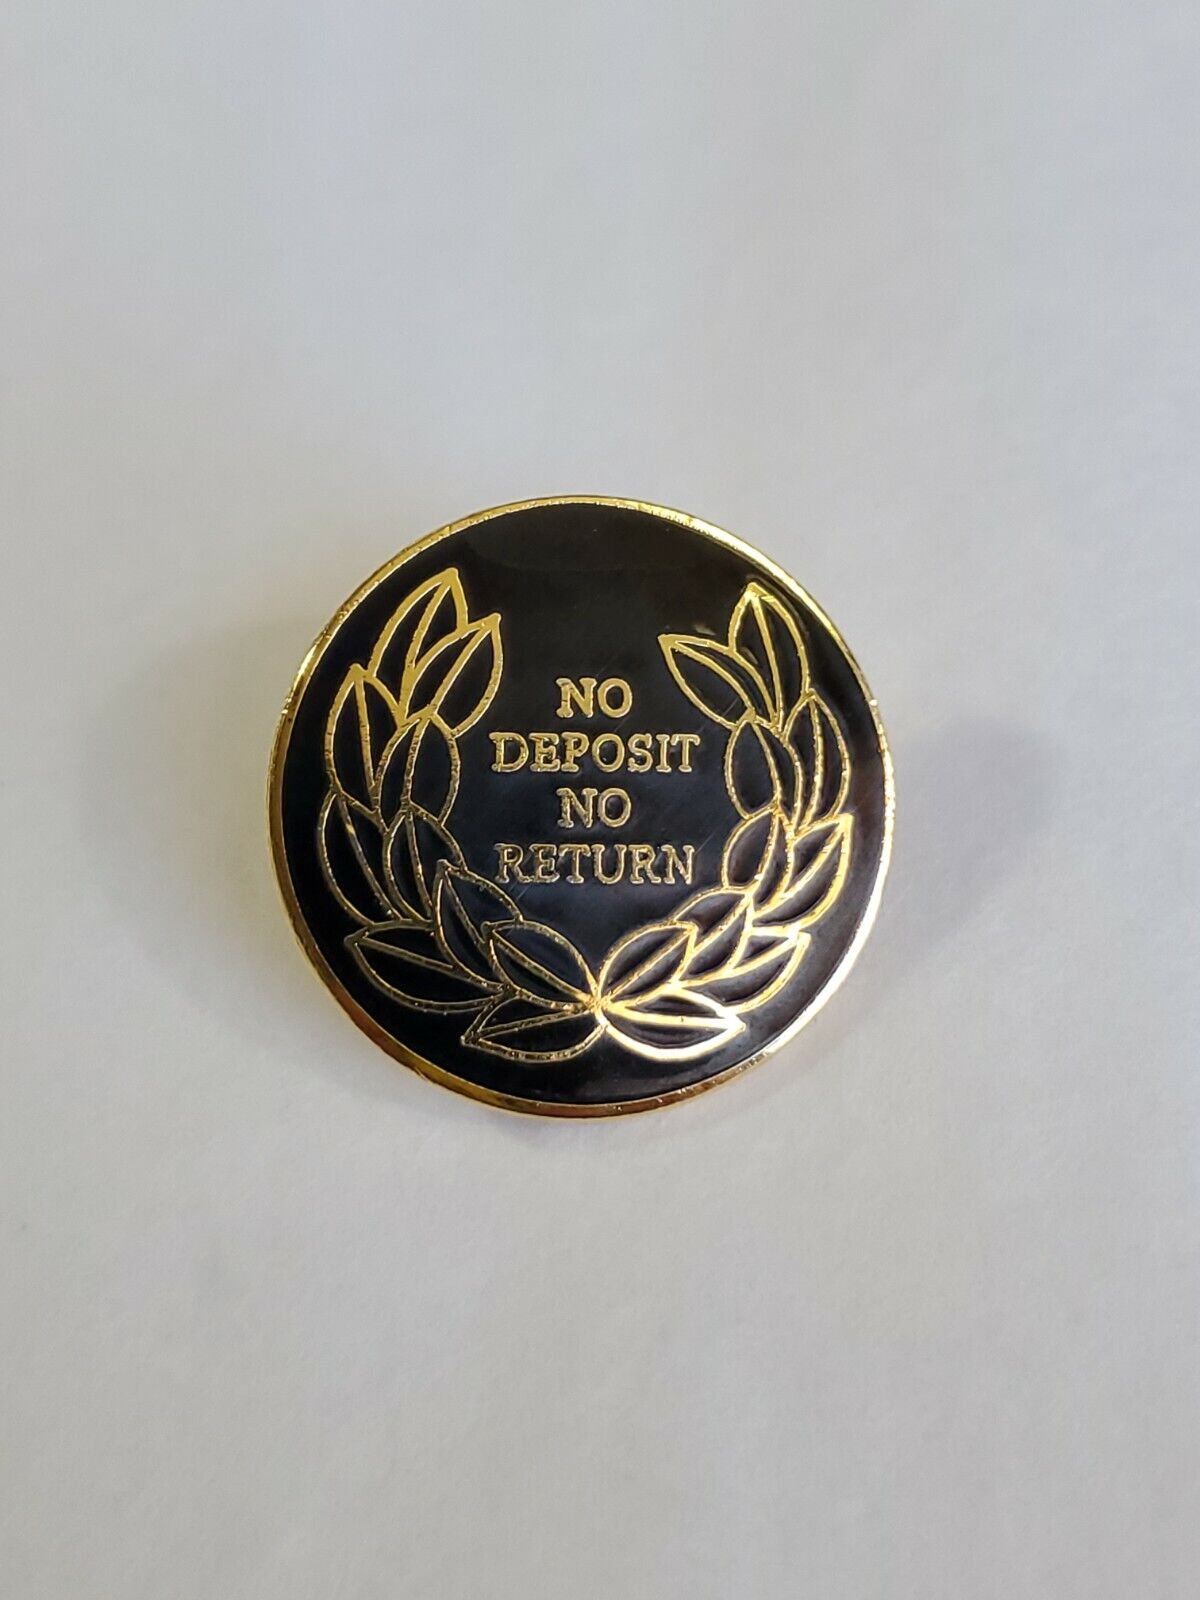 No Deposit No Return Lapel Hat Jacket Pin Vintage Enamel 